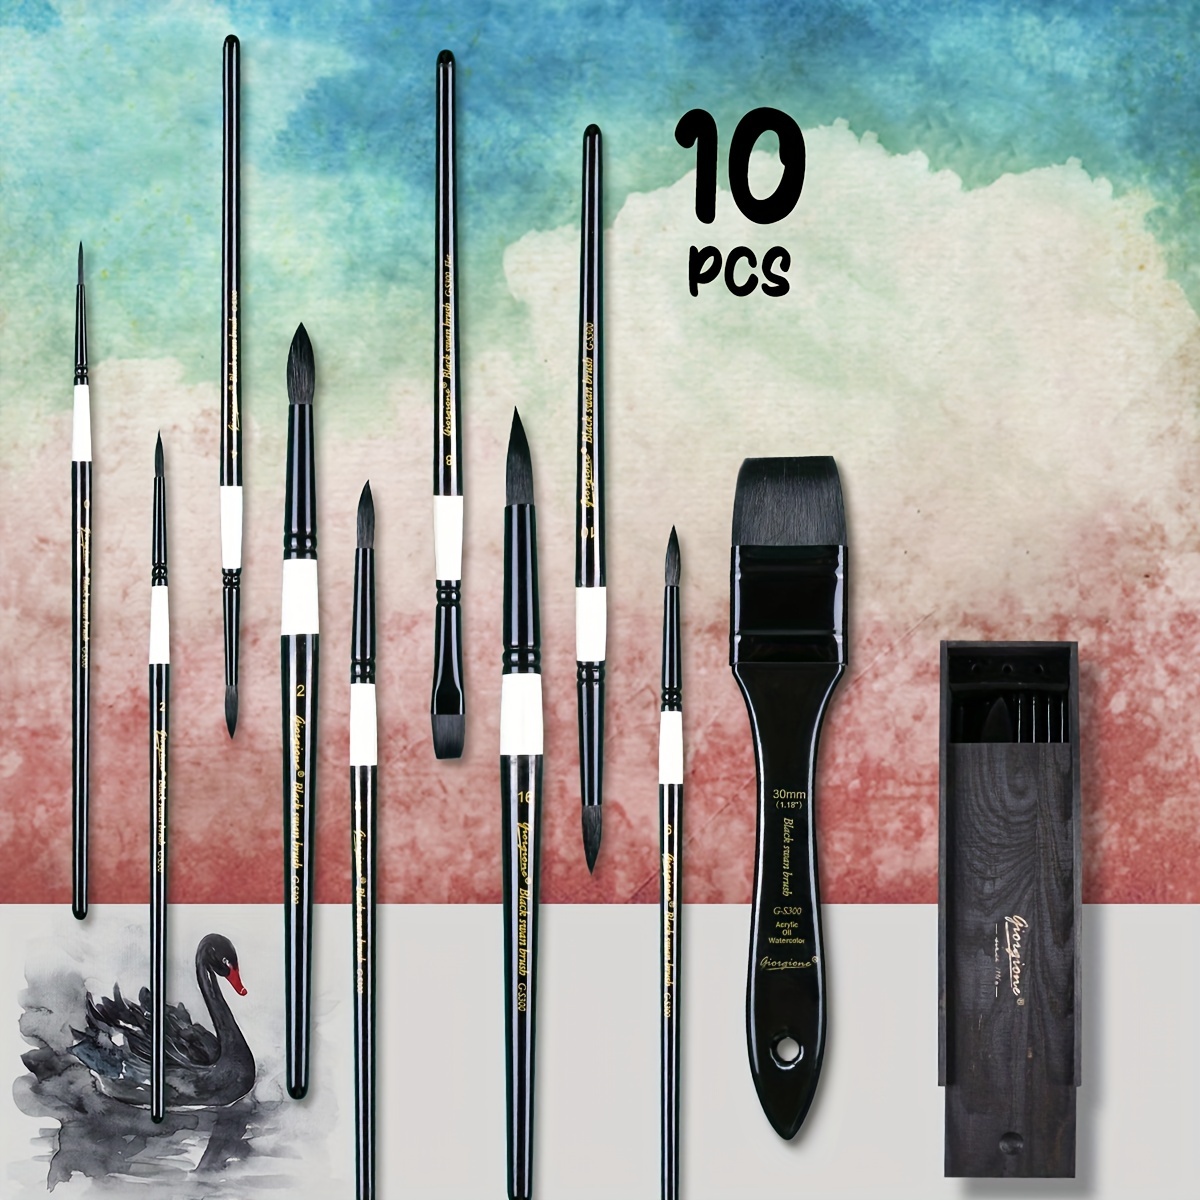 Oval Mop Brush Set 4pcs